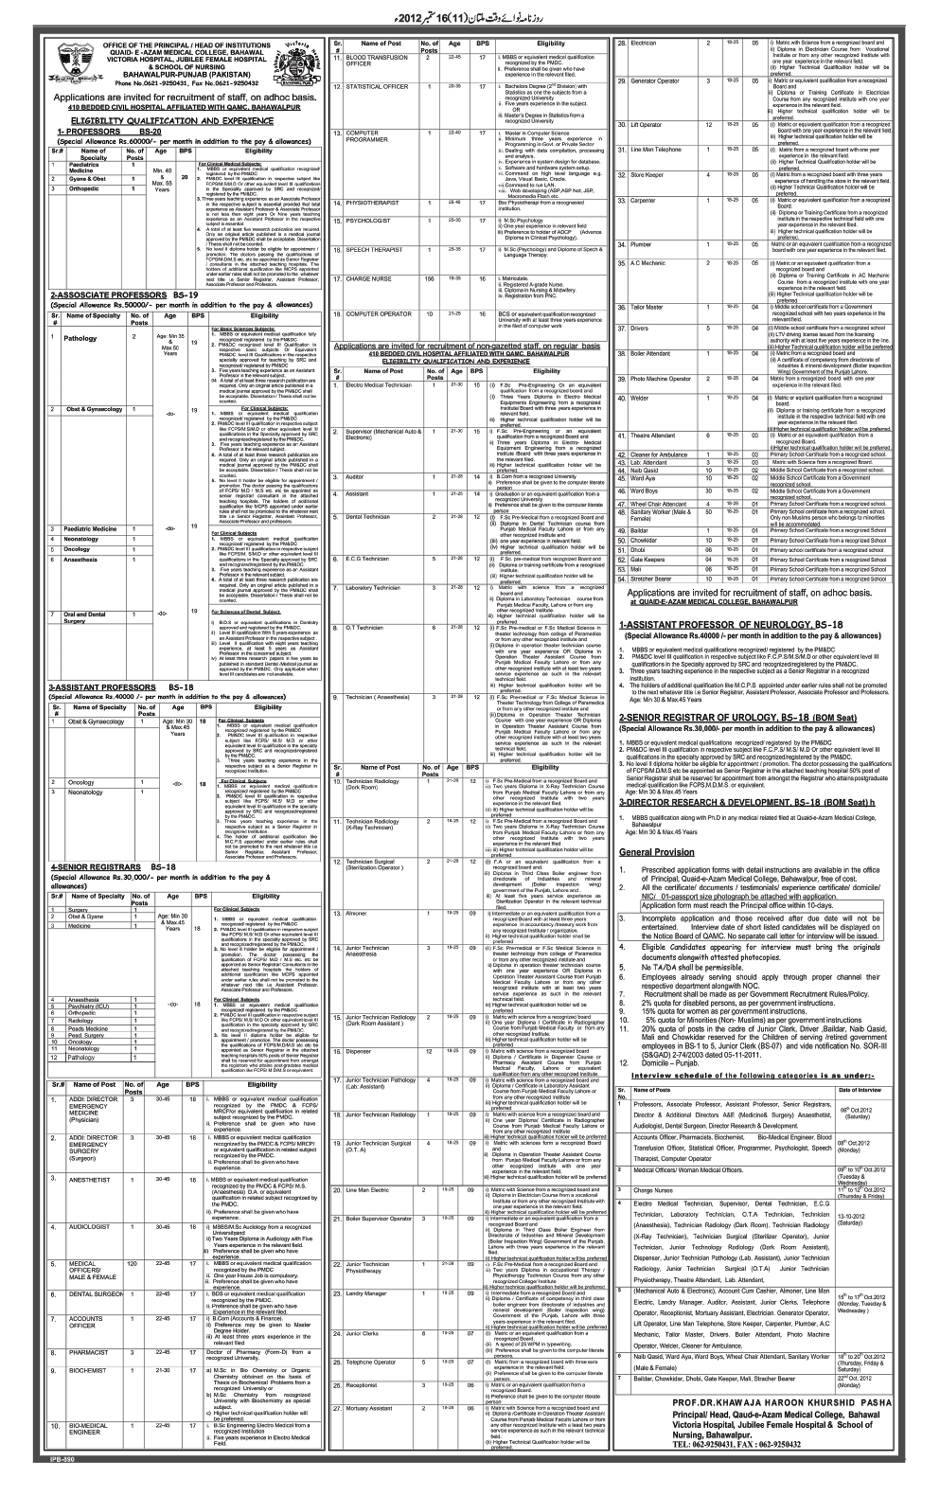 Quaid-e-Azam Mdical College Bahawal Victoria Hospital Jobs (Government Jobs)